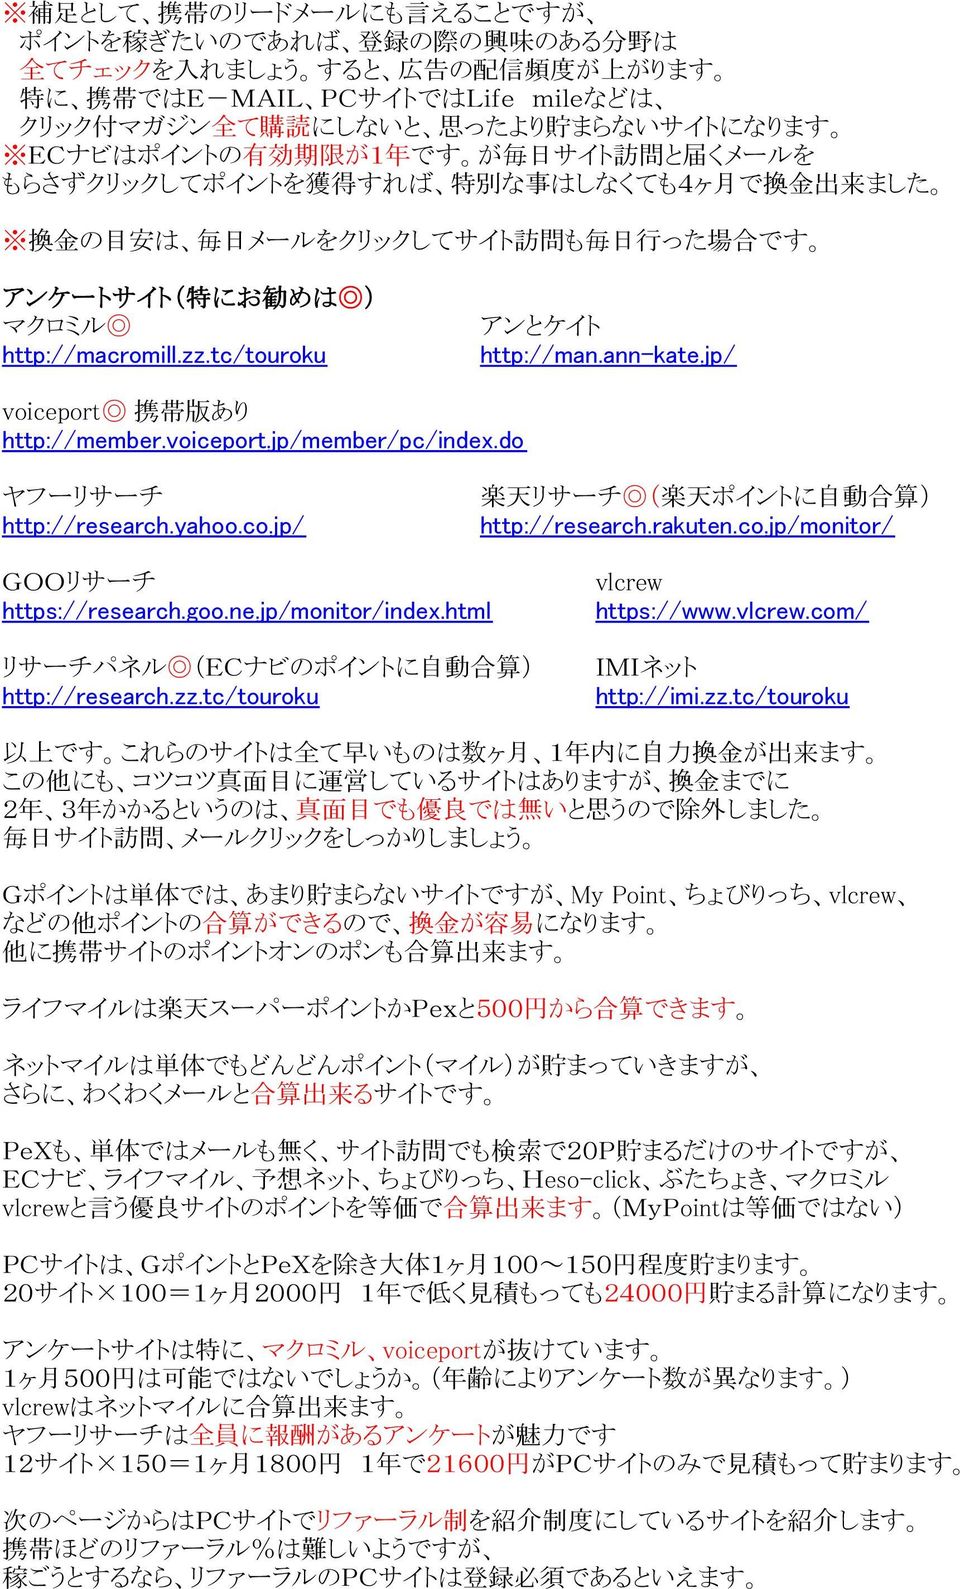 マクロミル http://macromill.zz.tc/touroku アンとケイト http://man.ann-kate.jp/ voiceport 携 帯 版 あり http://member.voiceport.jp/member/pc/index.do ヤフーリサーチ 楽 天 リサーチ ( 楽 天 ポイントに 自 動 合 算 ) http://research.yahoo.co.